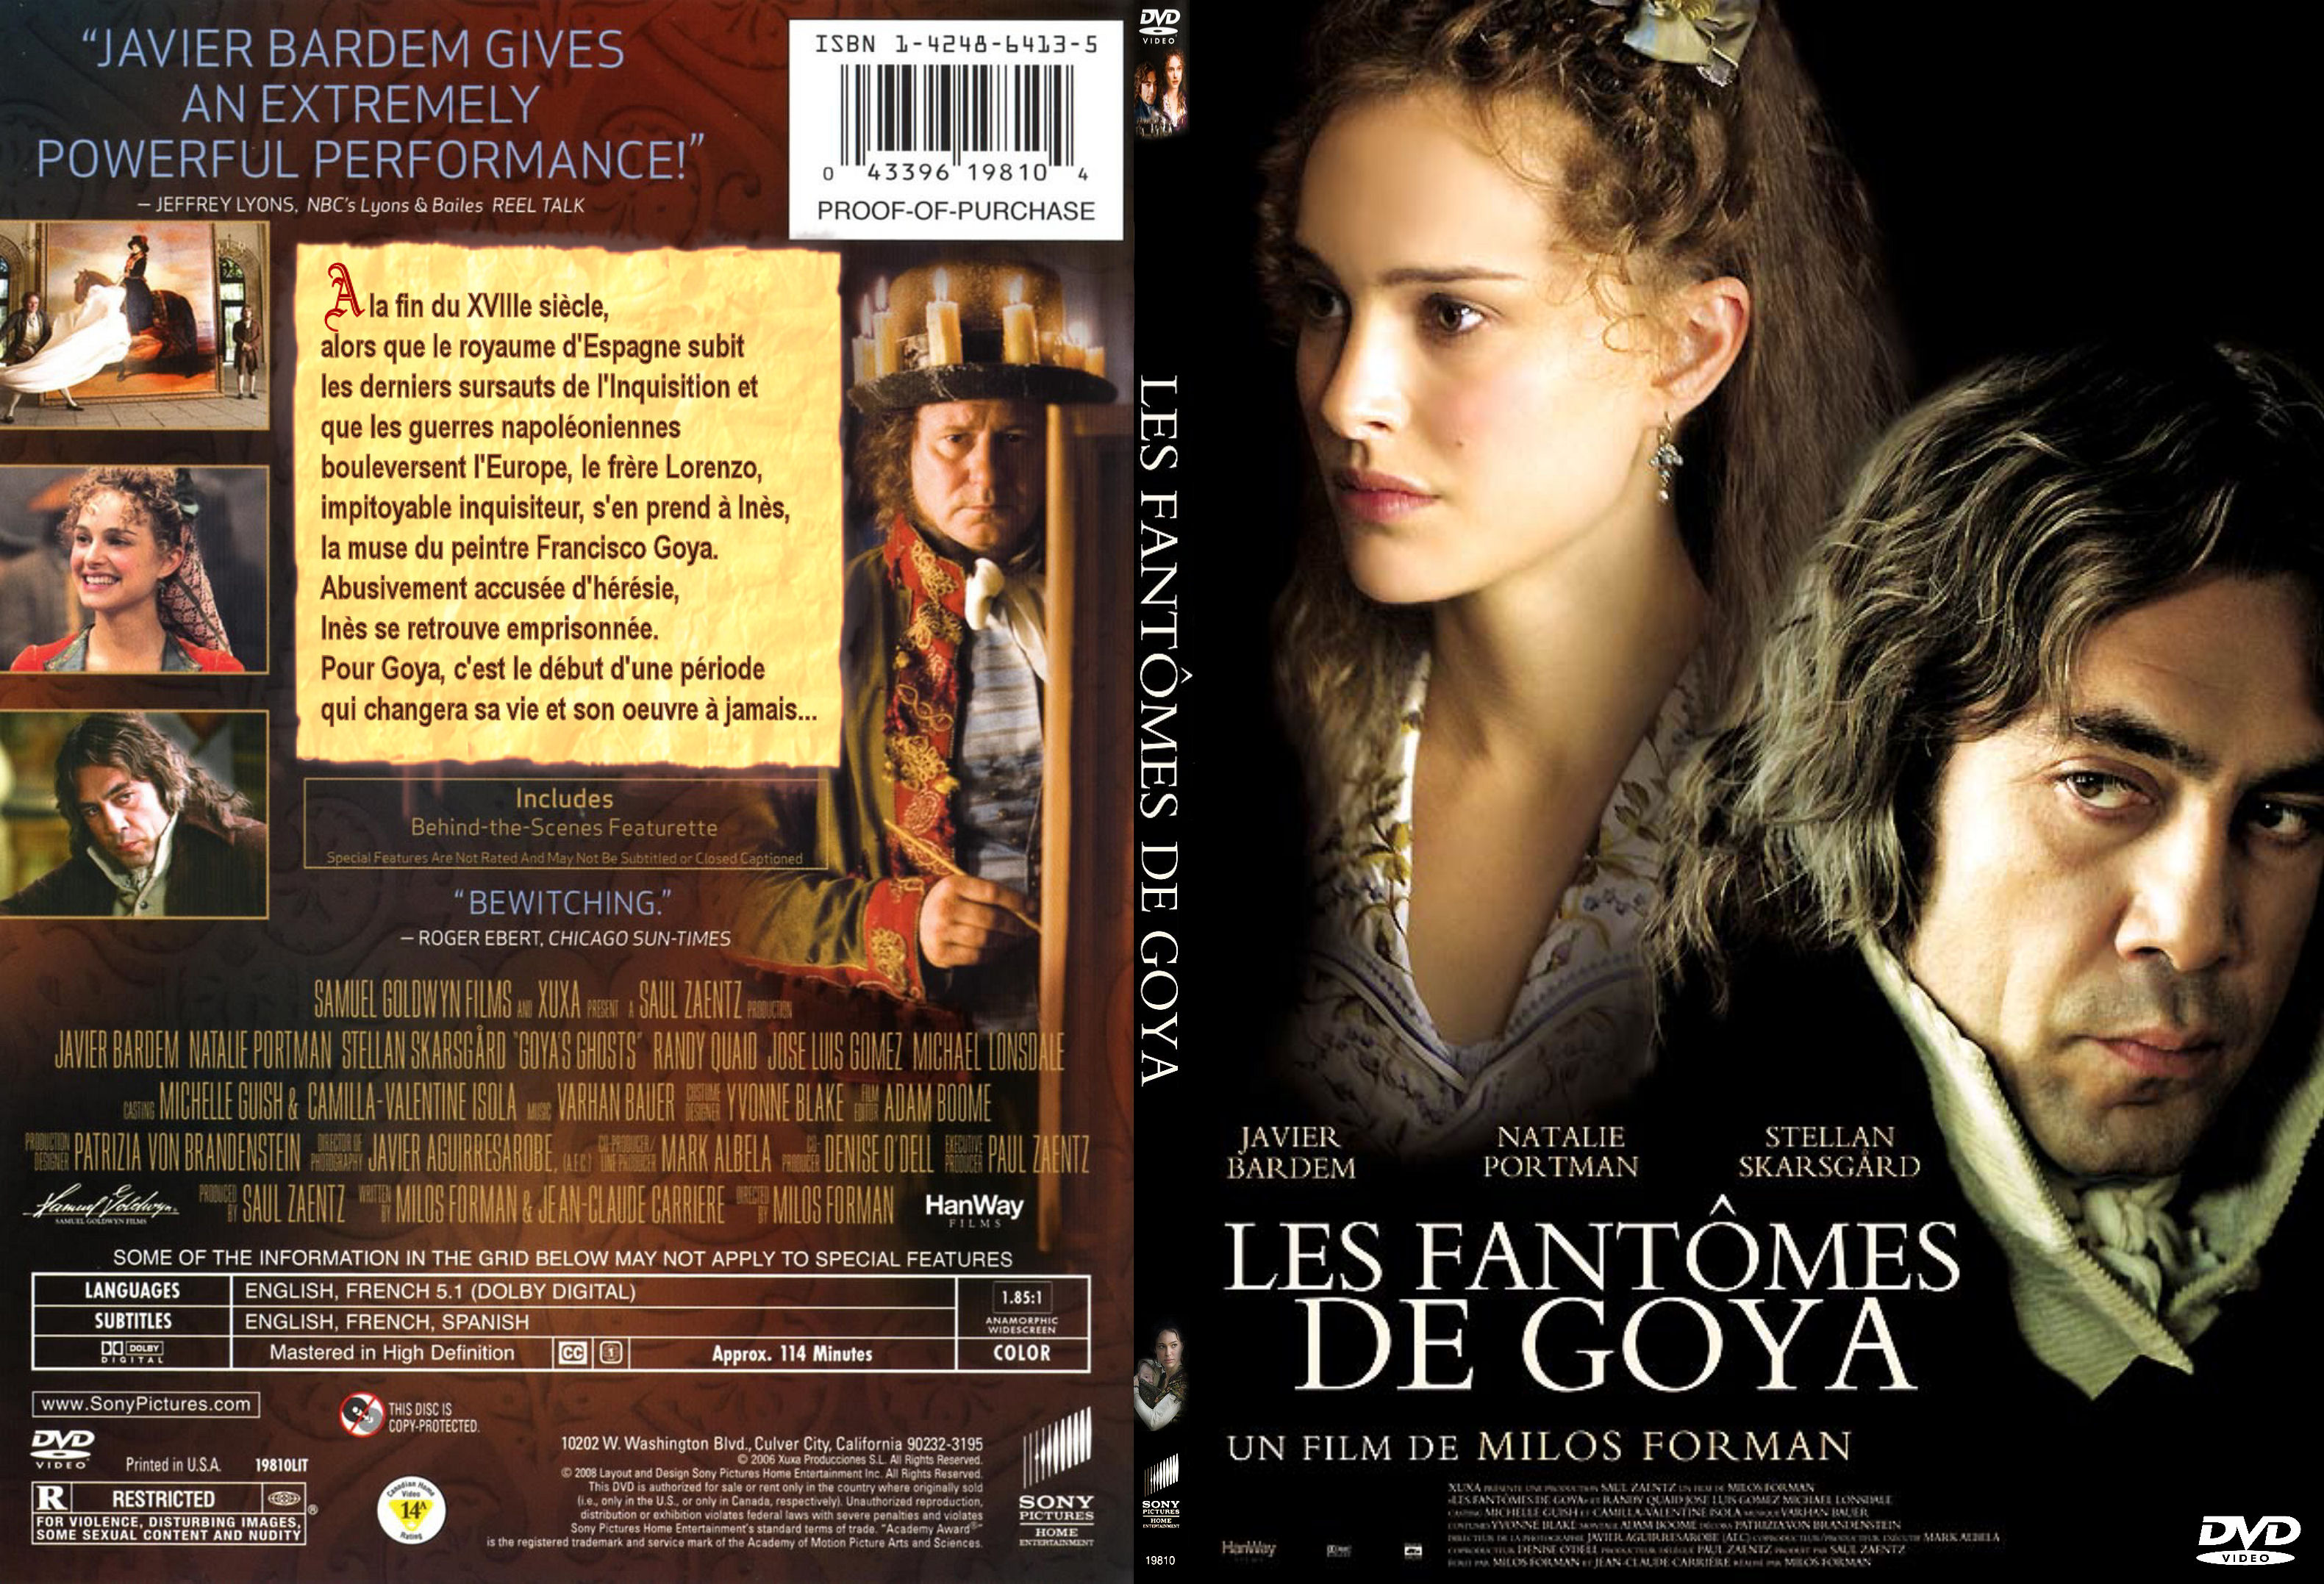 Jaquette DVD Les fantomes de Goya - SLIM